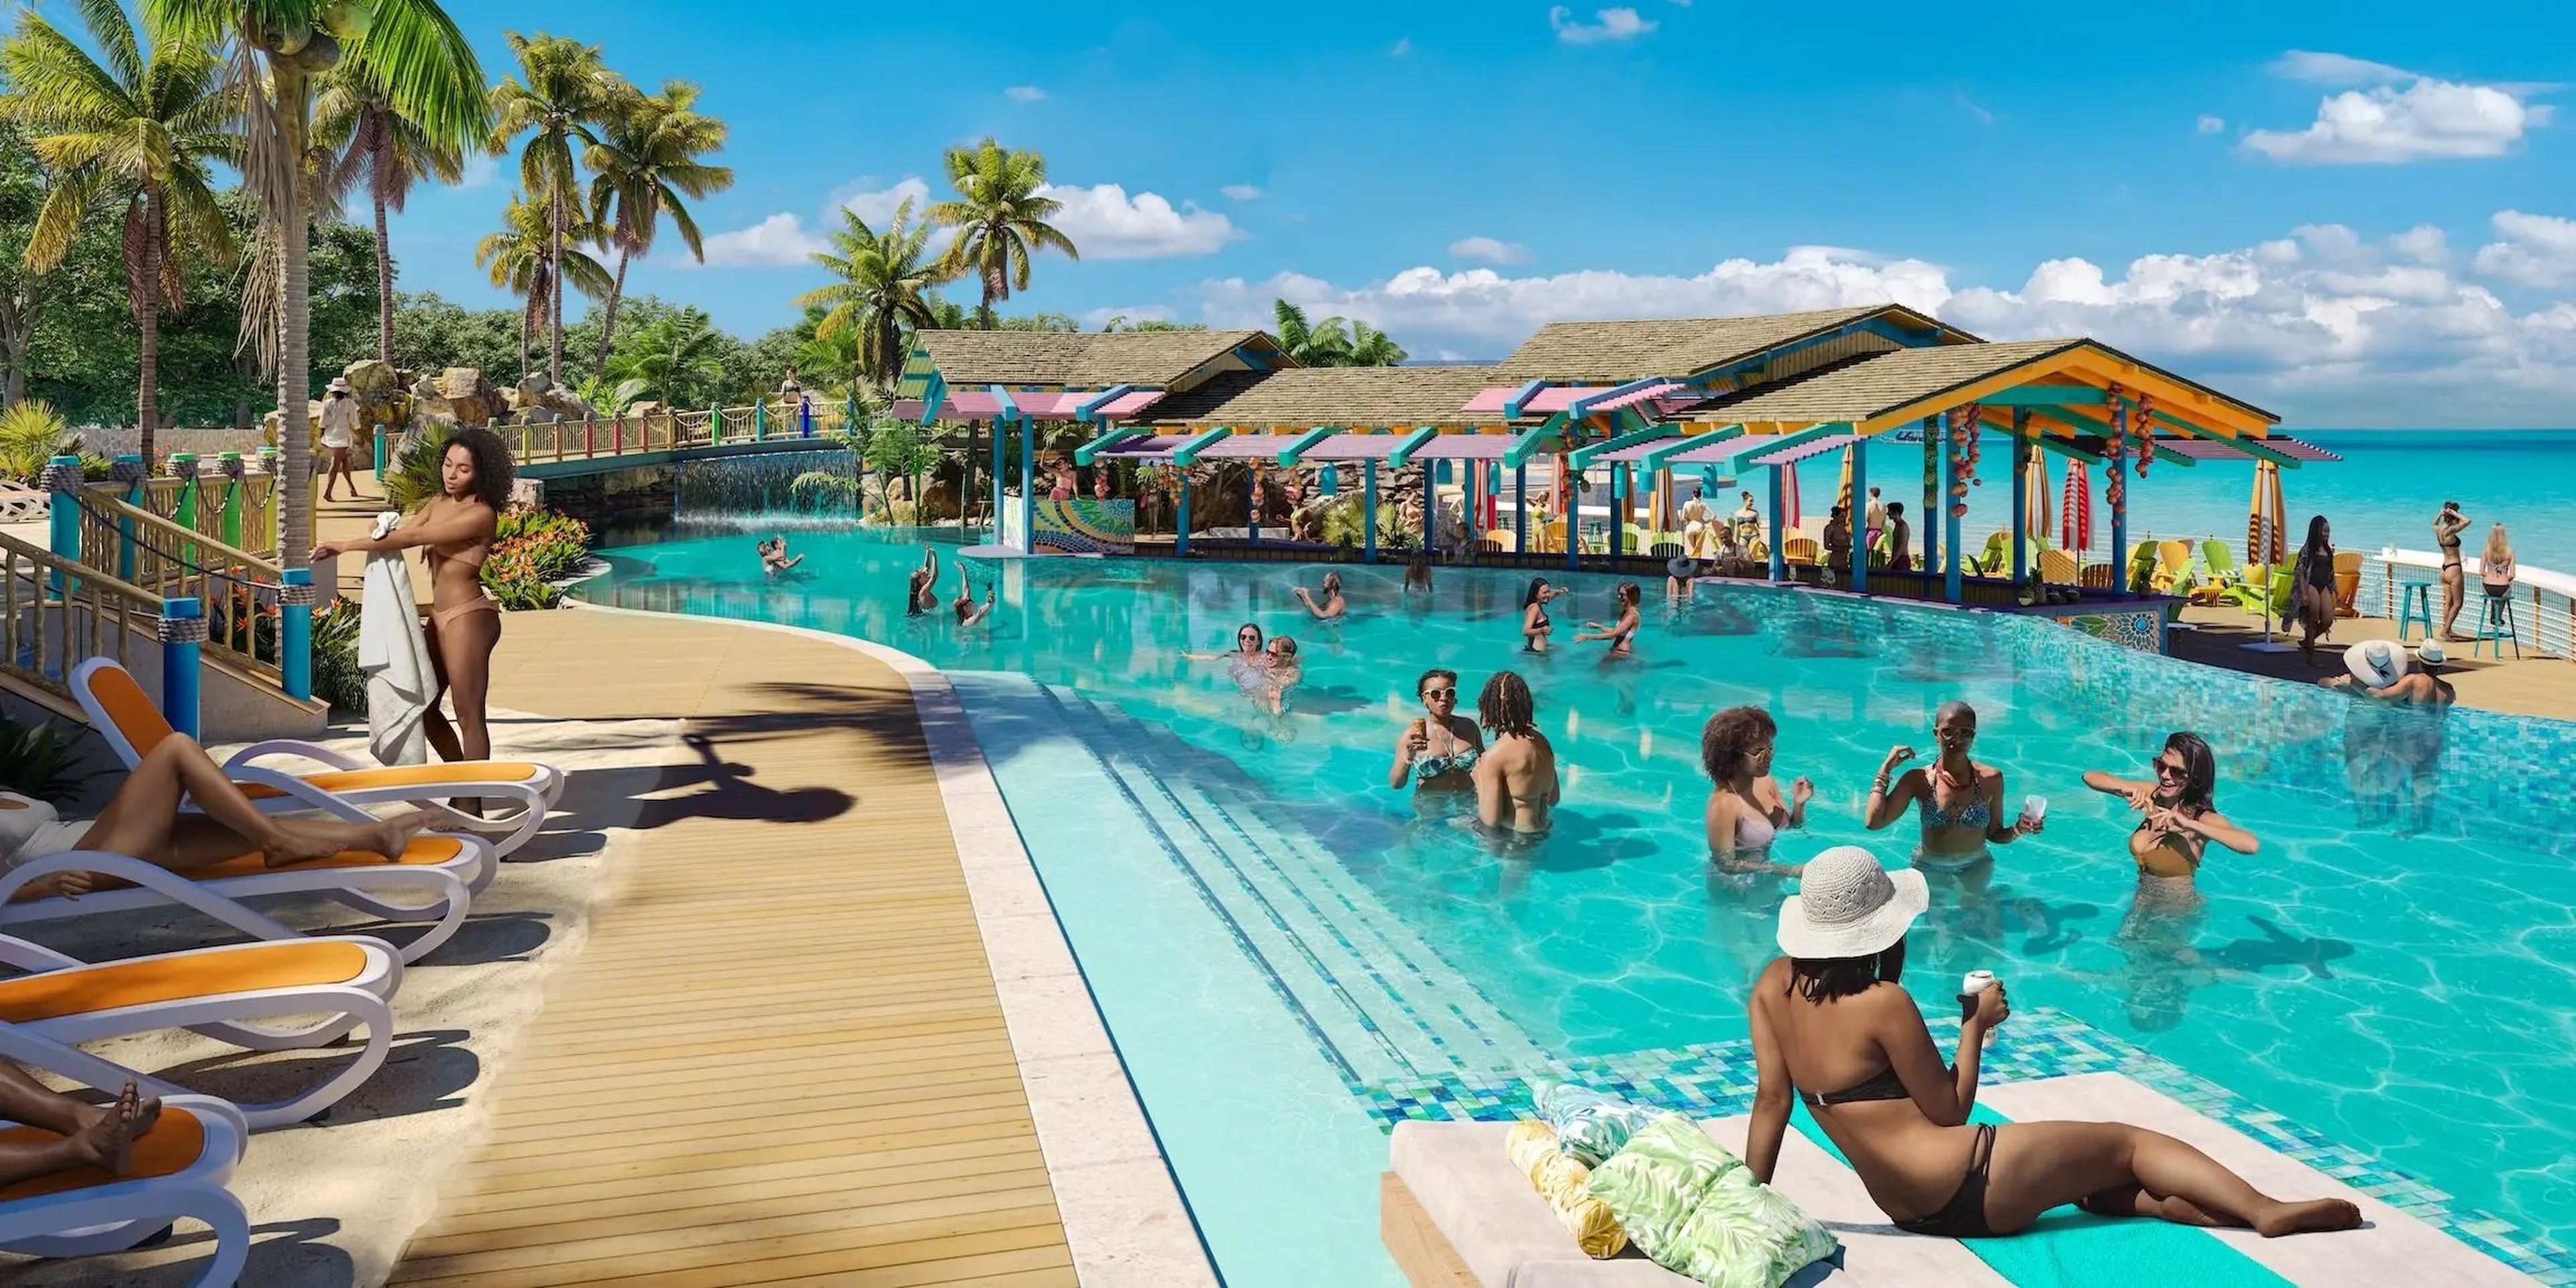 El proyecto Royal Beach Club at Paradise Island se presenta como una extensa propiedad frente al mar, con cabañas, tumbonas y piscinas.